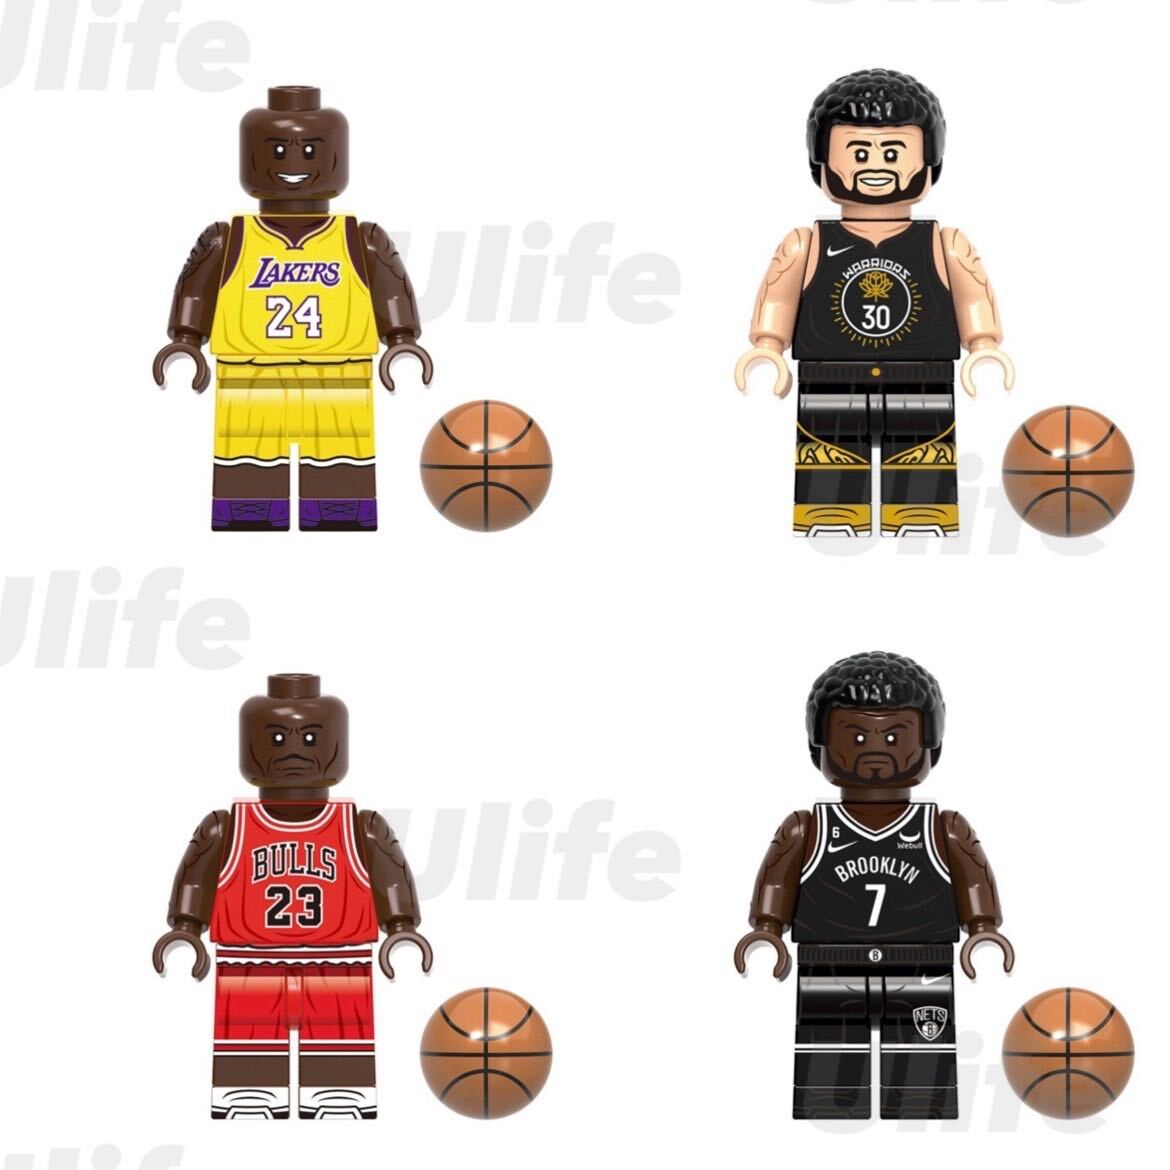 8体セットB LEGO レゴ互換 ミニフィグ NBA プロ バスケットボール 人気チーム スポーツ選手 フィギュア ミニチュア 送料無料 匿名配送_画像3